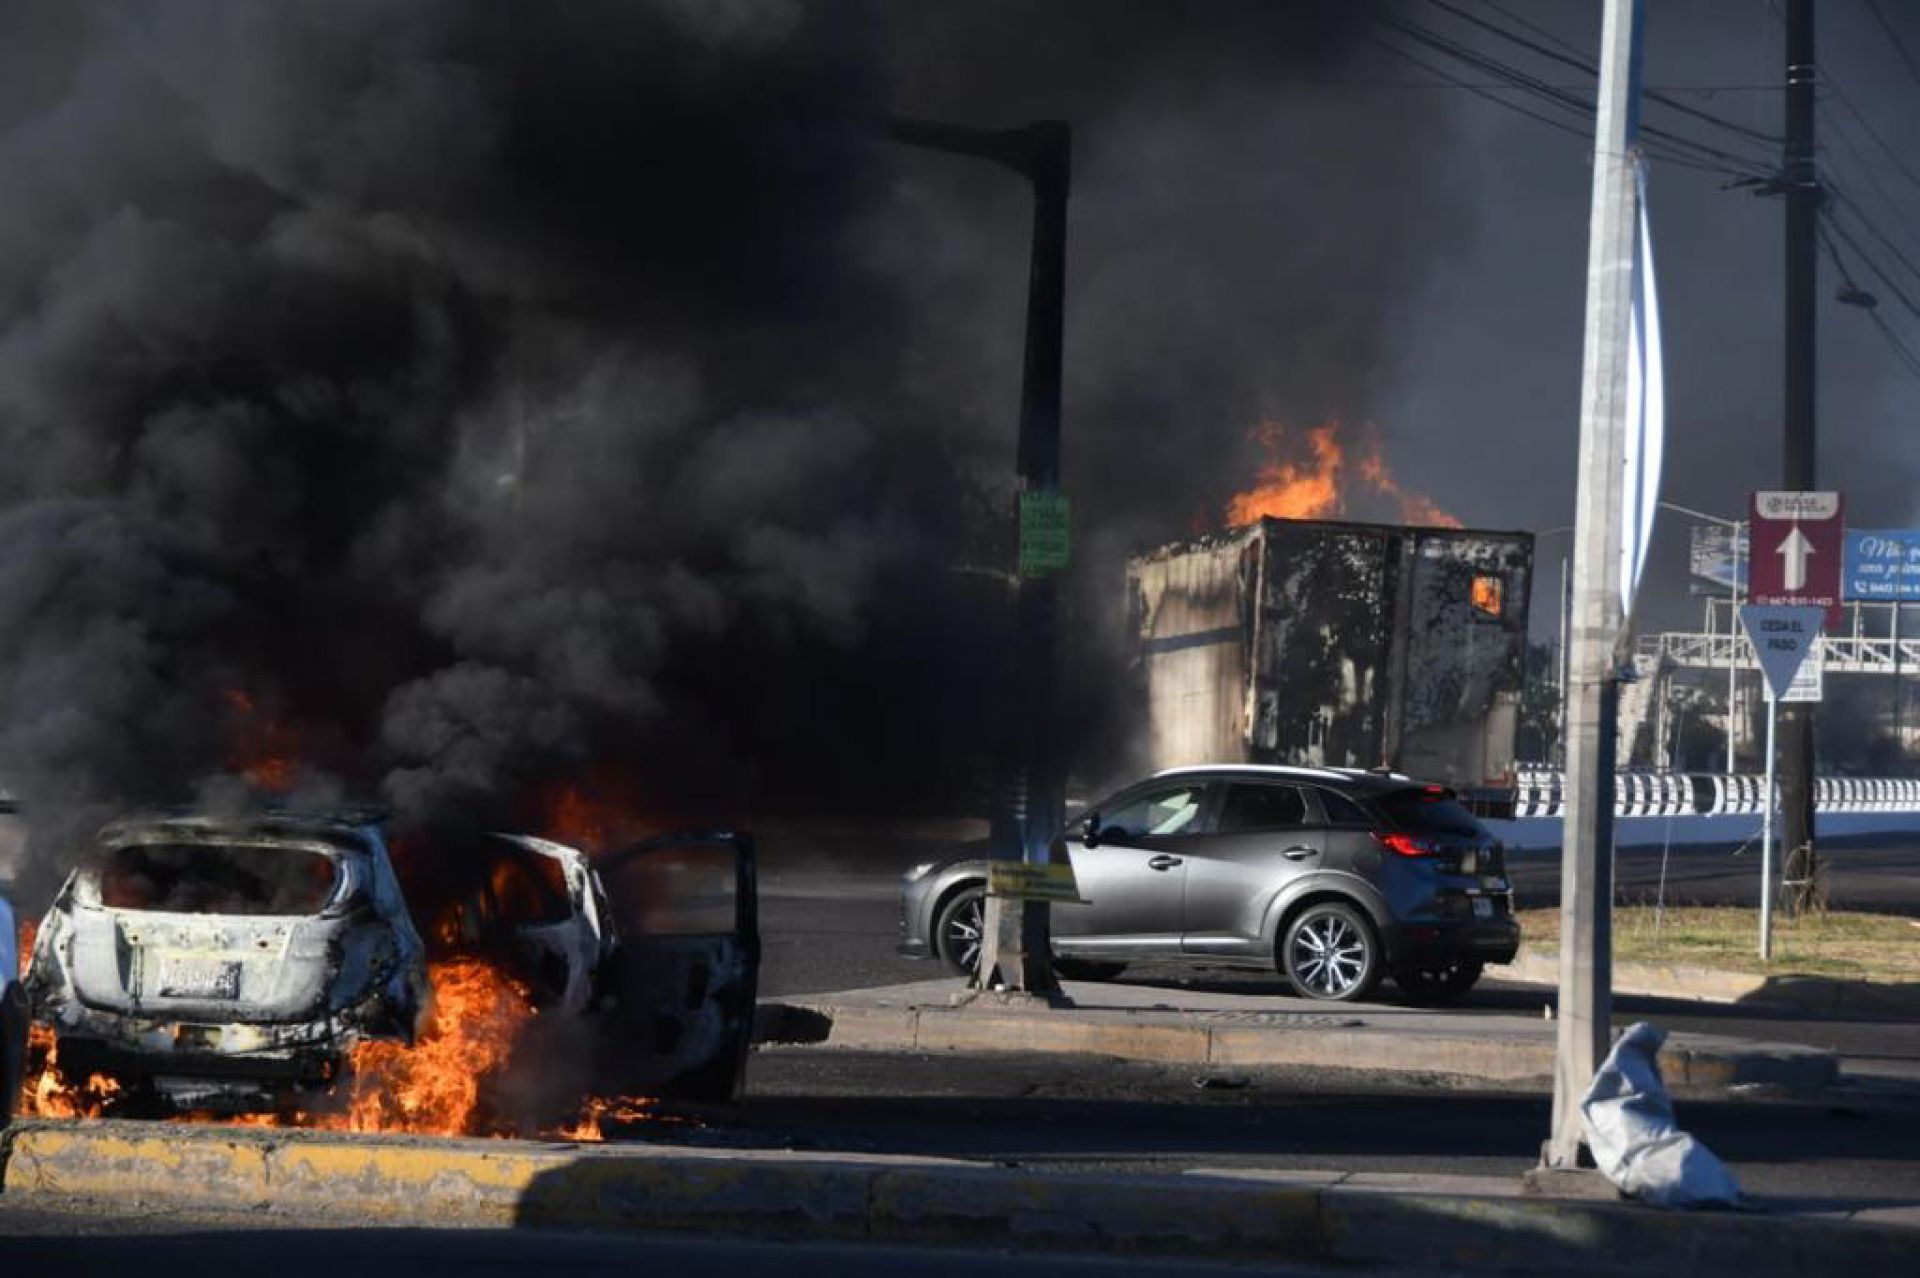 La detención de "El Ratón” ocasionó enfrentamientos armados en los que se reportaron vehículos incendiados, narcobloqueos, balaceras y despojo de automóviles (LEO ESPINOZA Y ALEJANDRO ESCOBAR/CUARTOSCURO.COM)